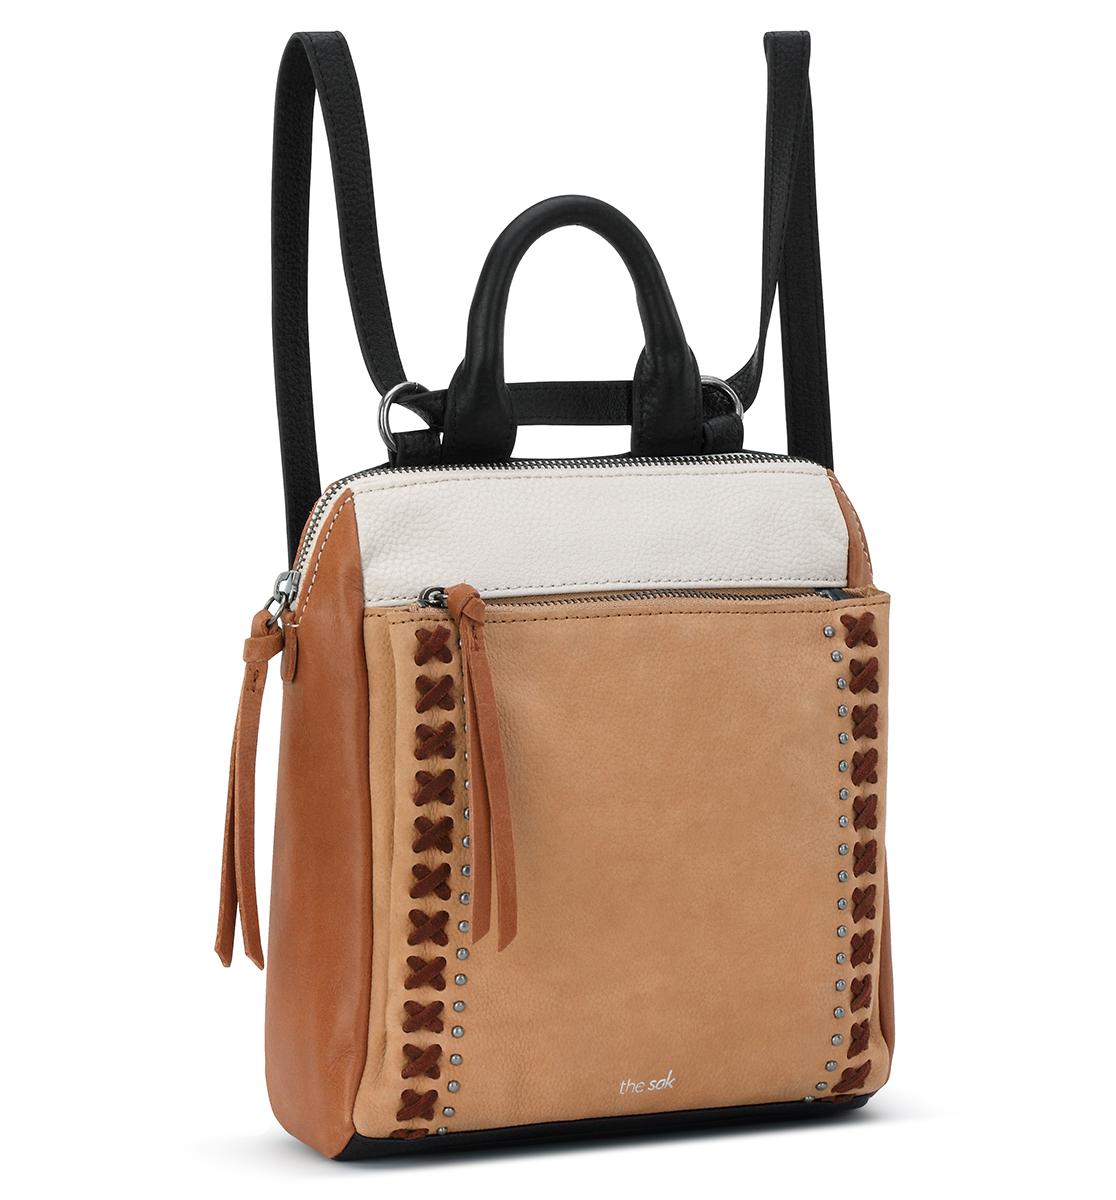 Loyola Mini Backpack | Convertible Mini Leather Backpack – The Sak